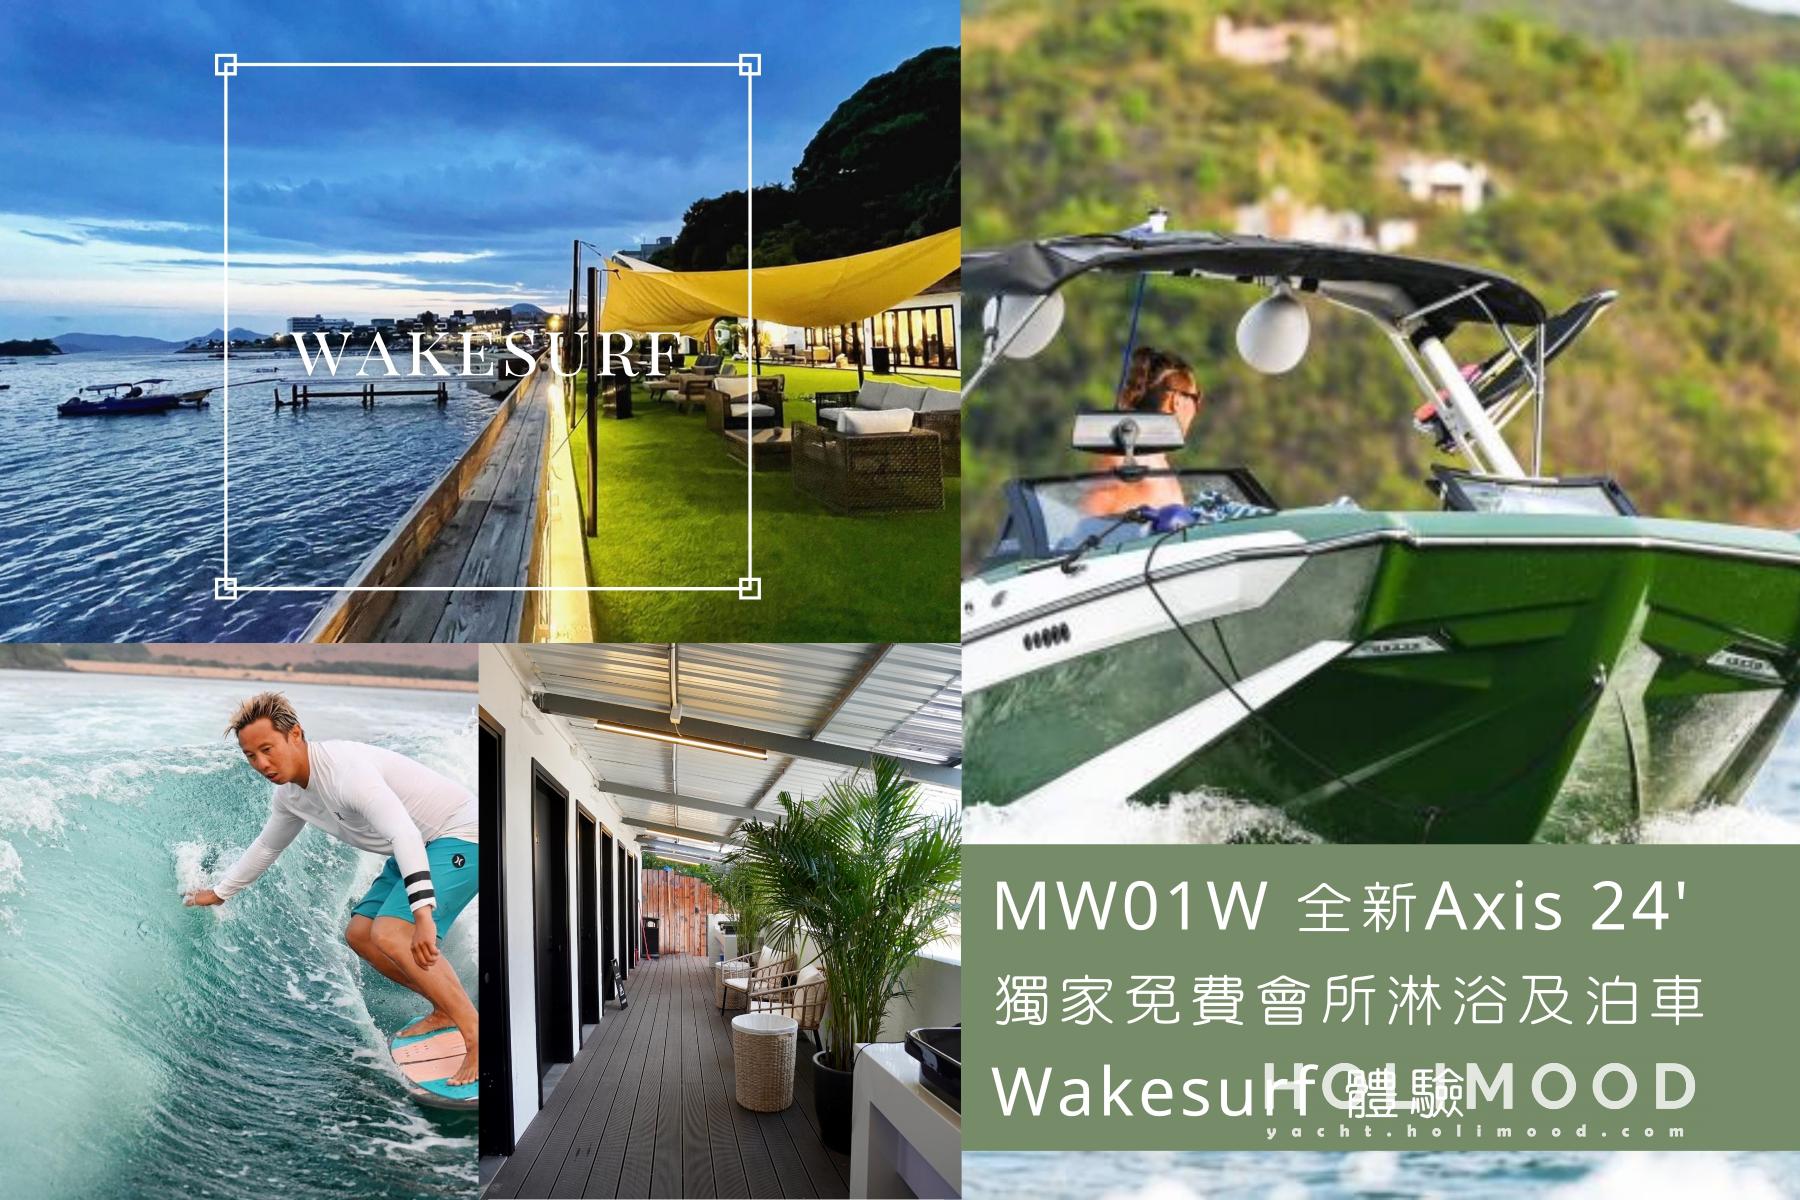 MW01 Sai Kung Wakesurf 1